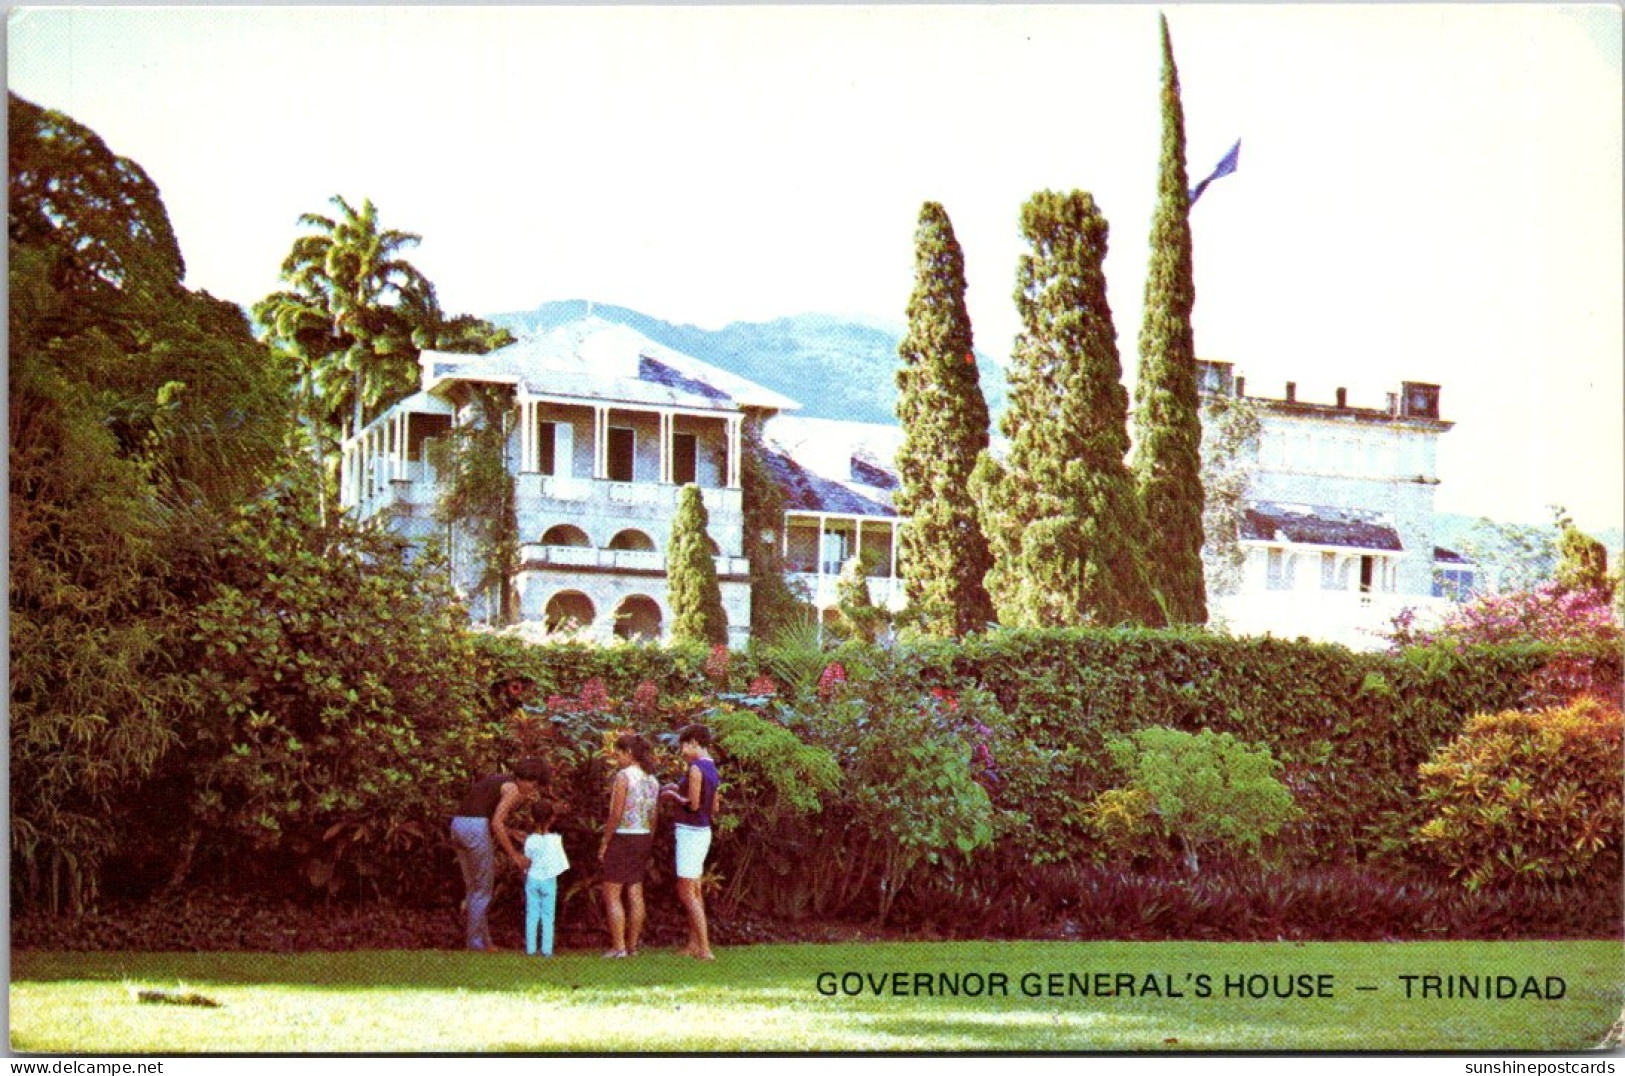 Trinidad Governor General's House - Trinidad